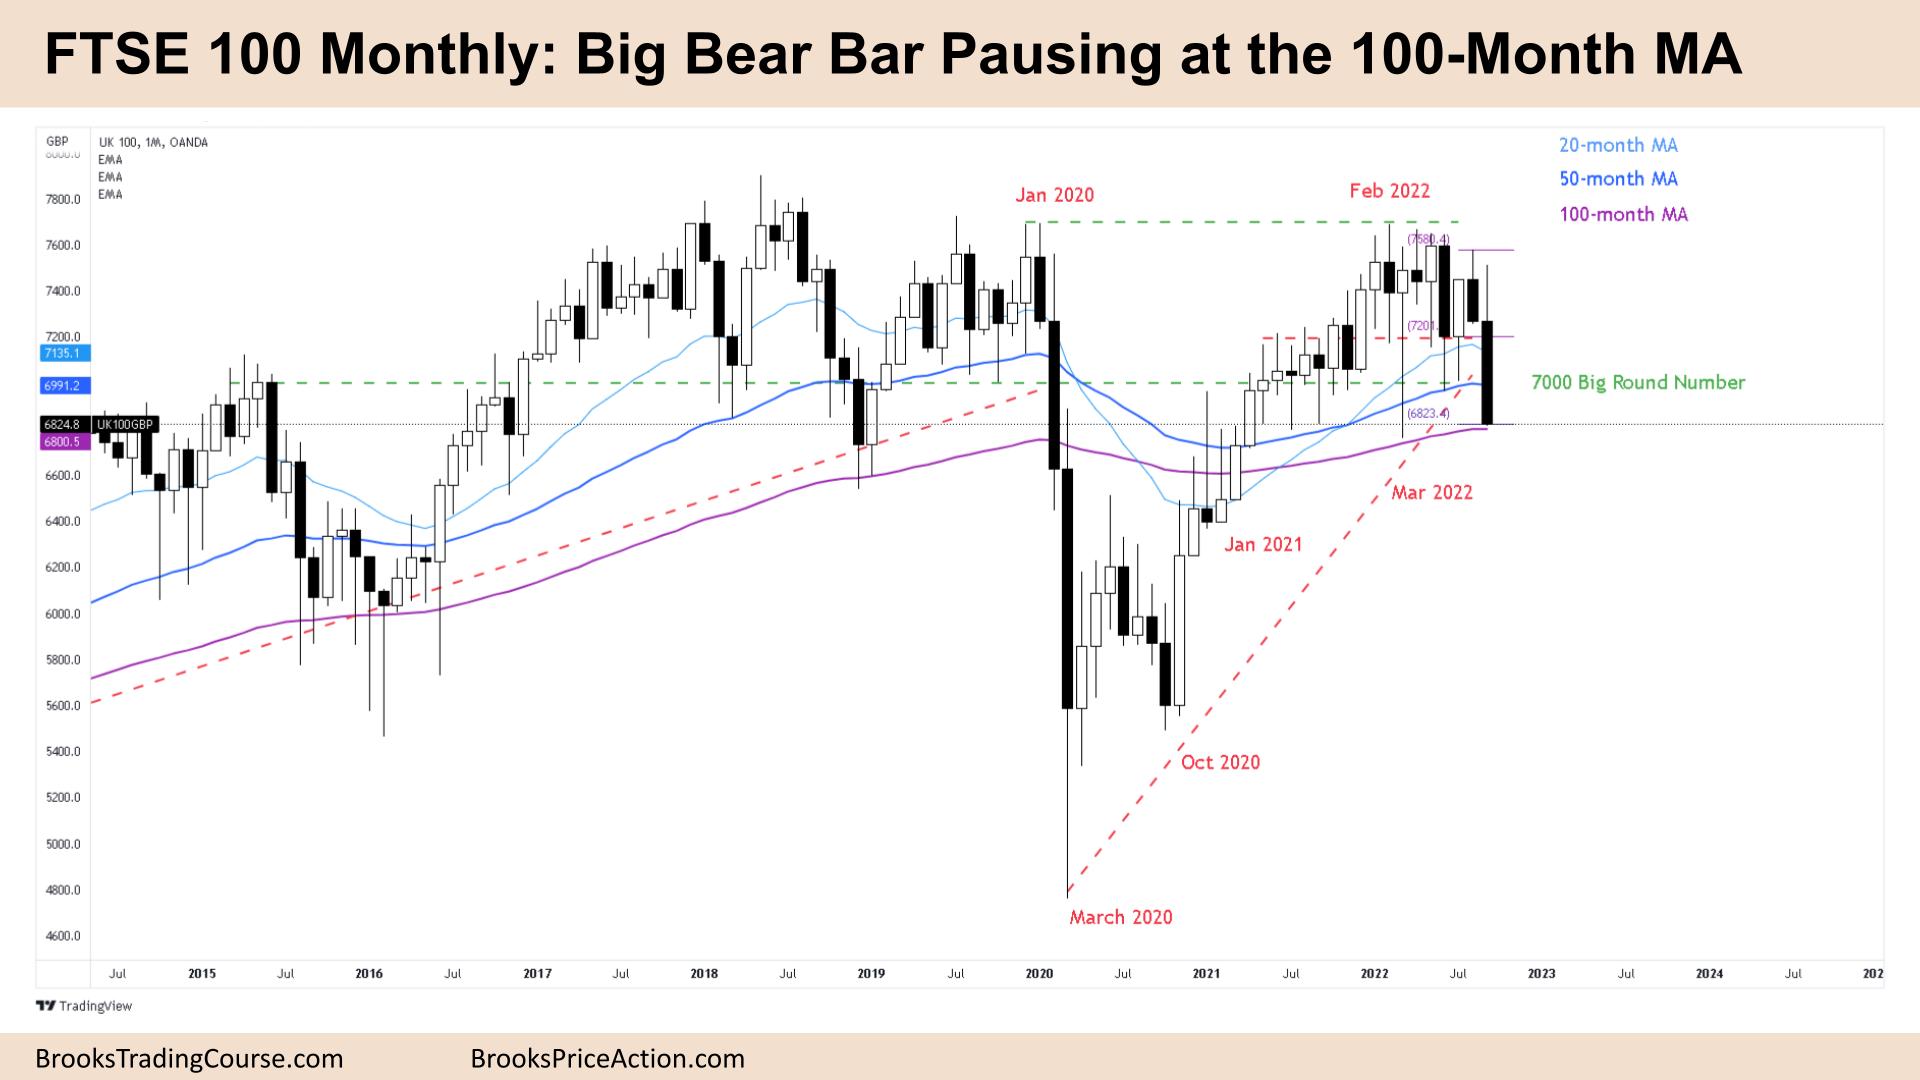 FTSE 100 Big Bear Bar Pause at the 100-Month MA